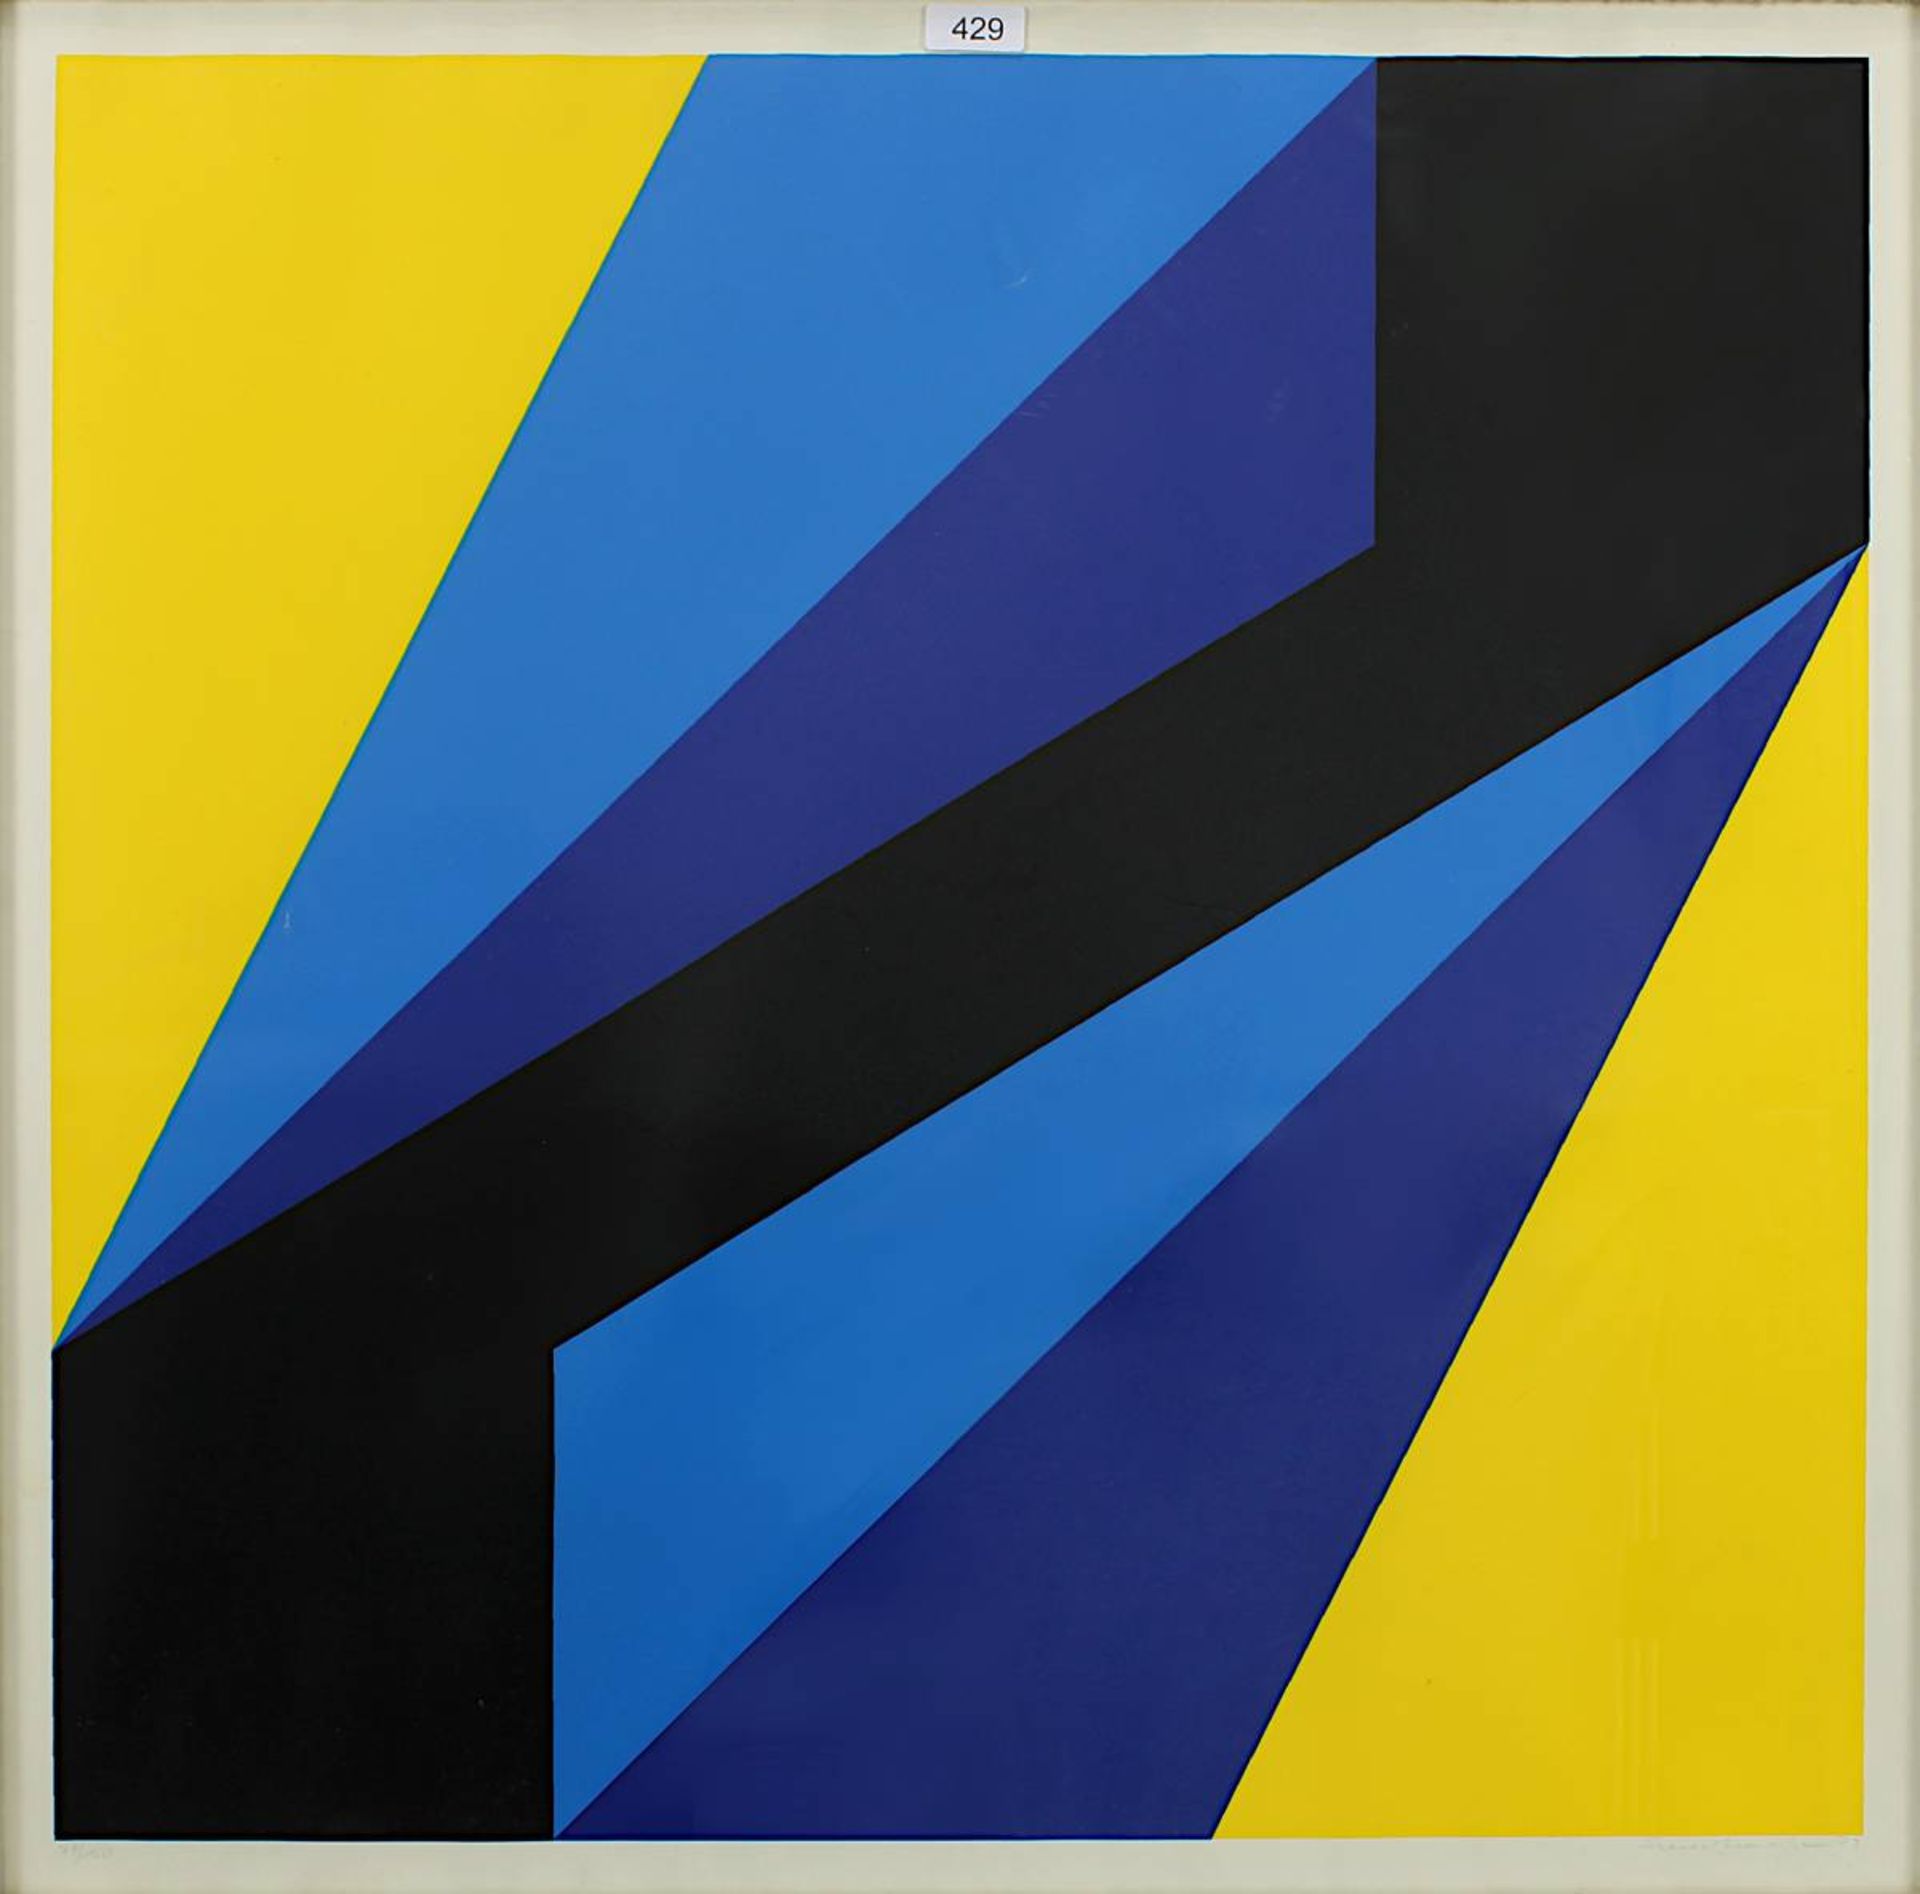 Sundhaußen, Helmut (Düsseldorf 1935 - 2018 Düsseldorf), Geometrische Komposition, Farbsiebdruck, - Bild 2 aus 2